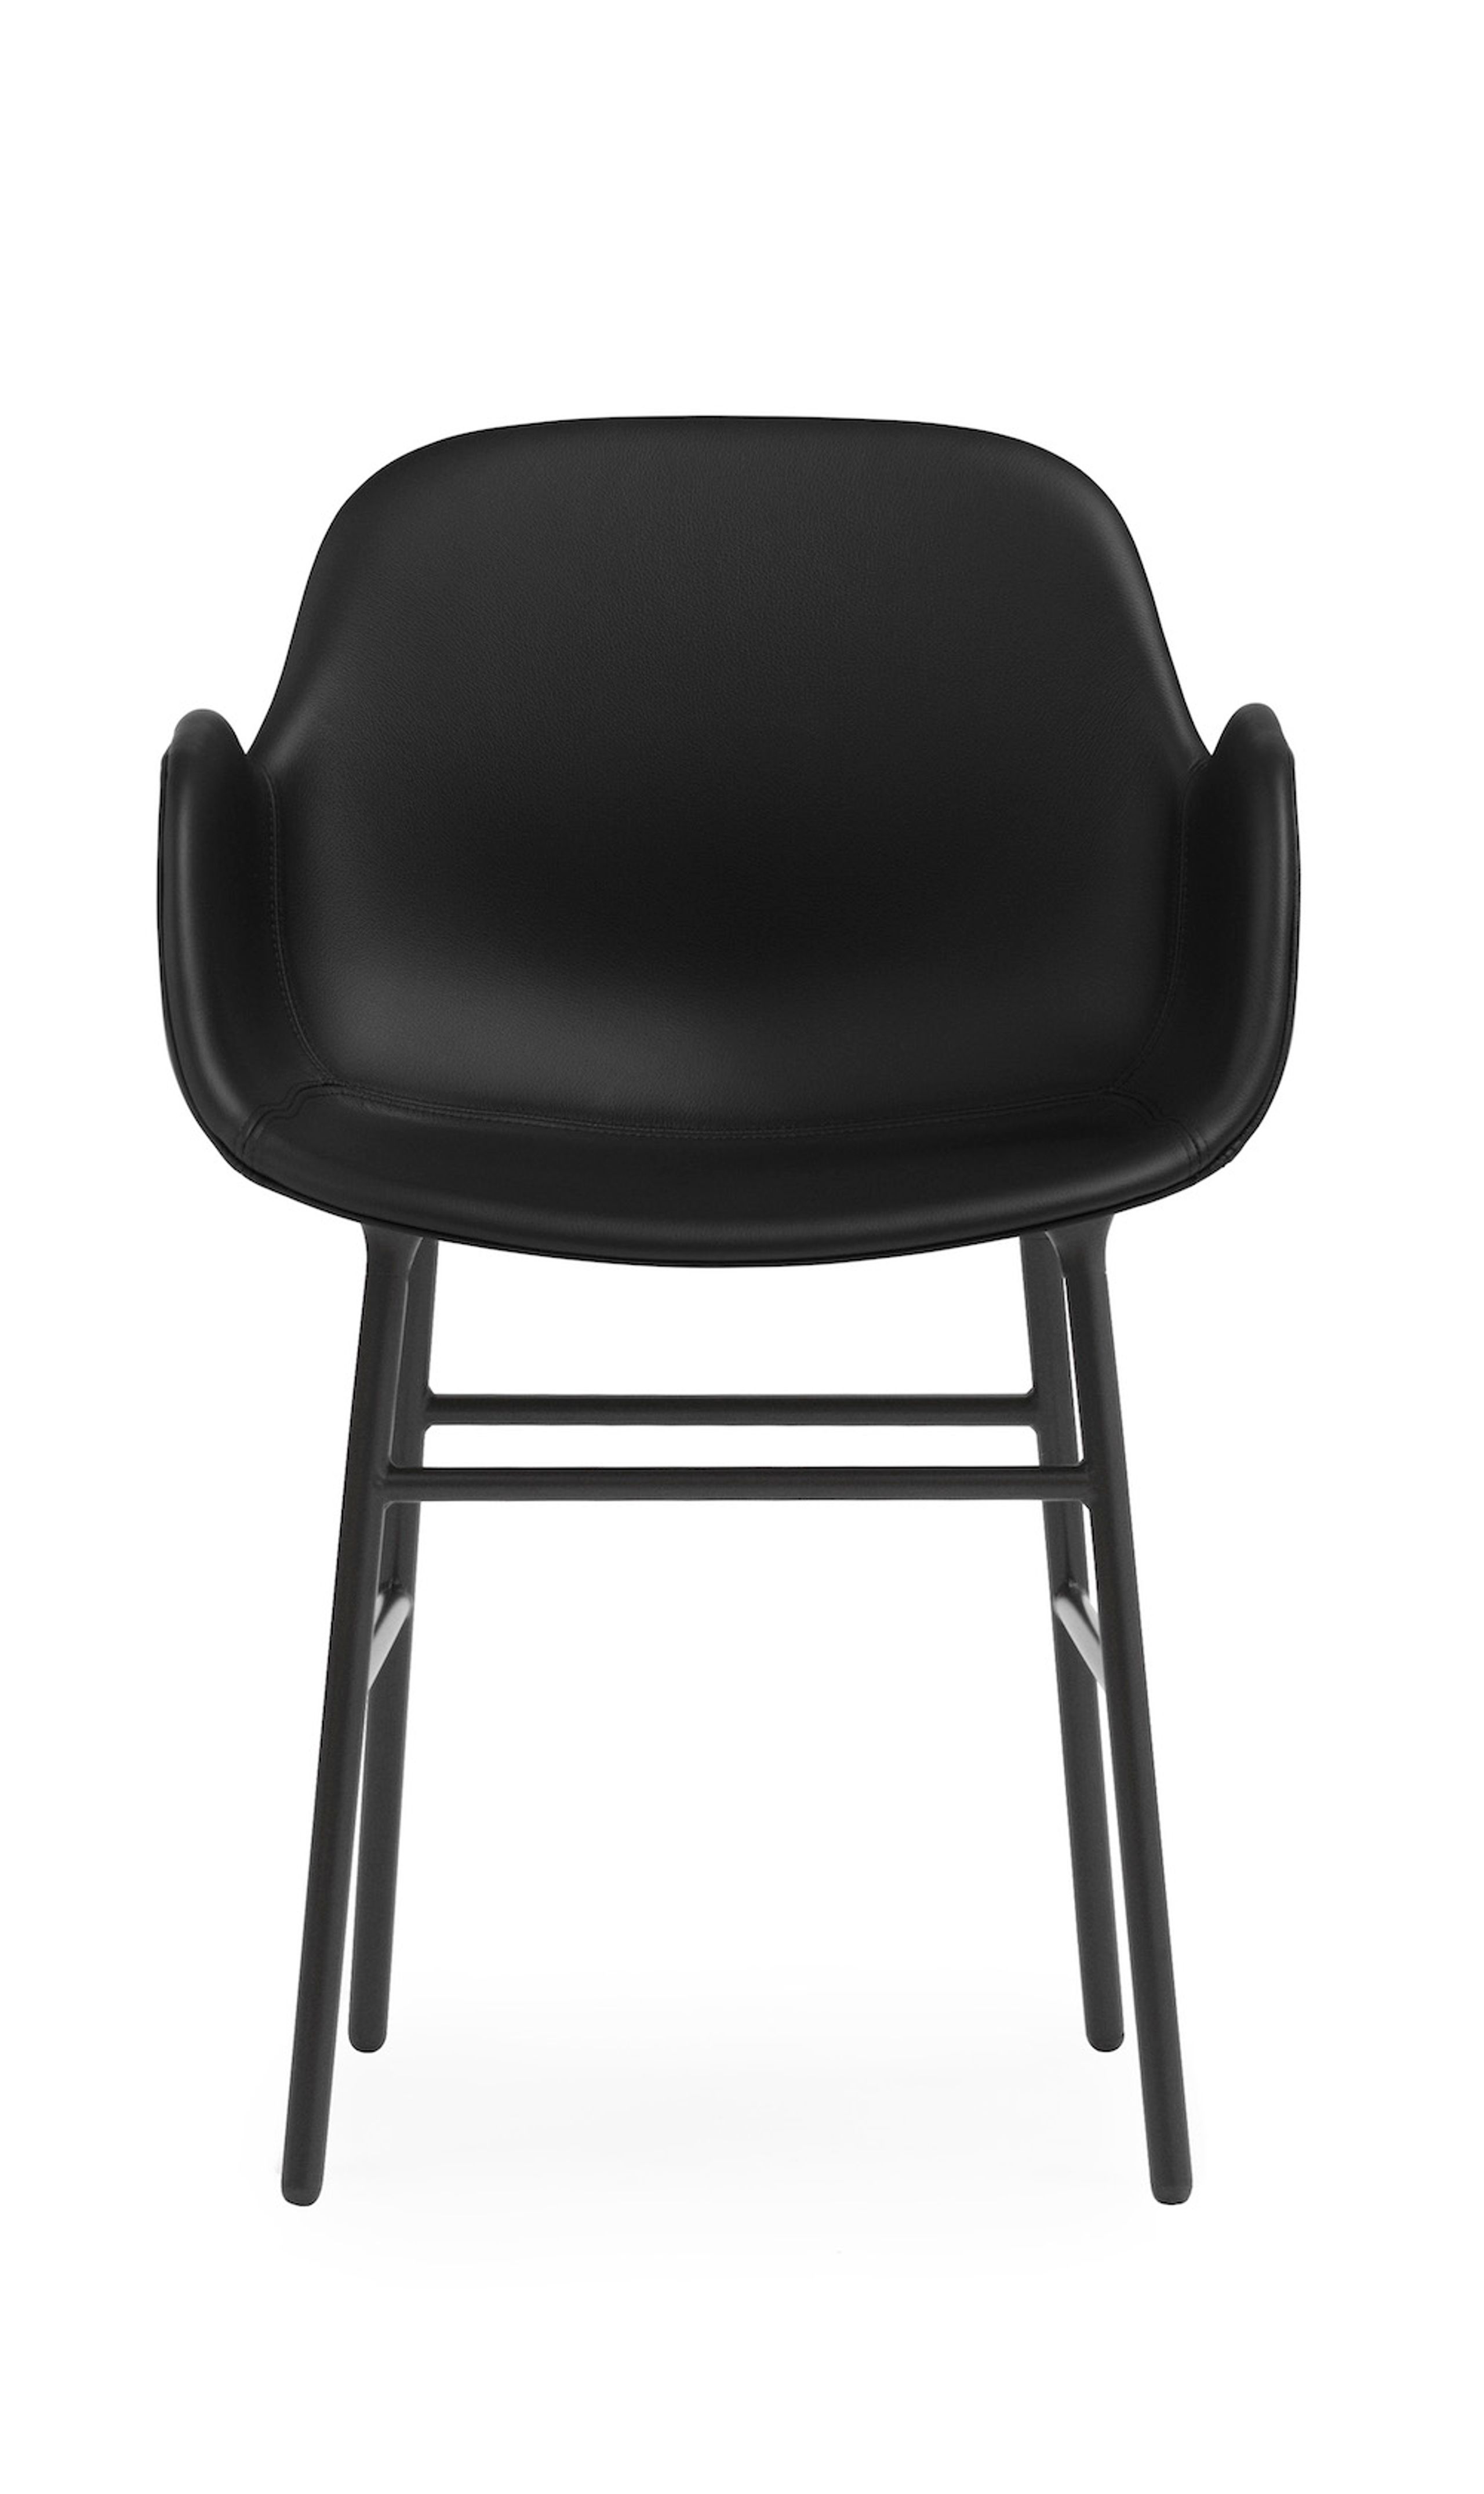 Normann Copenhagen - Chaise à manger - Form Armchair - Full Upholstery Steel, Chrome & Brass - Stel: Sort Stål / Ultra Leather: 41574 (Brandy) - 41599 (Black)